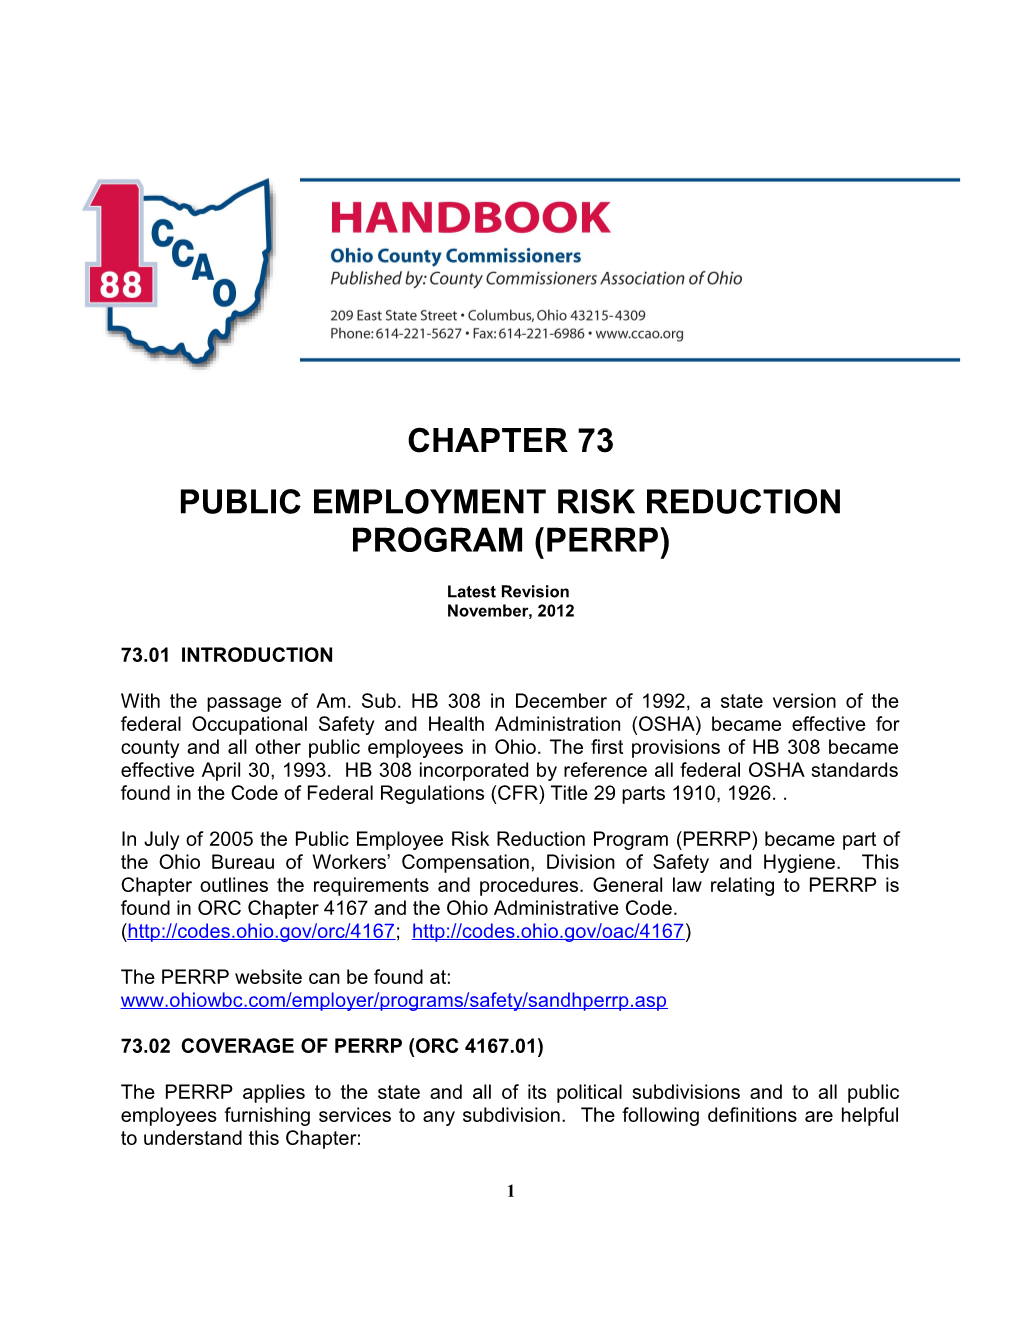 Public Employment Risk Reduction Program(Perrp)